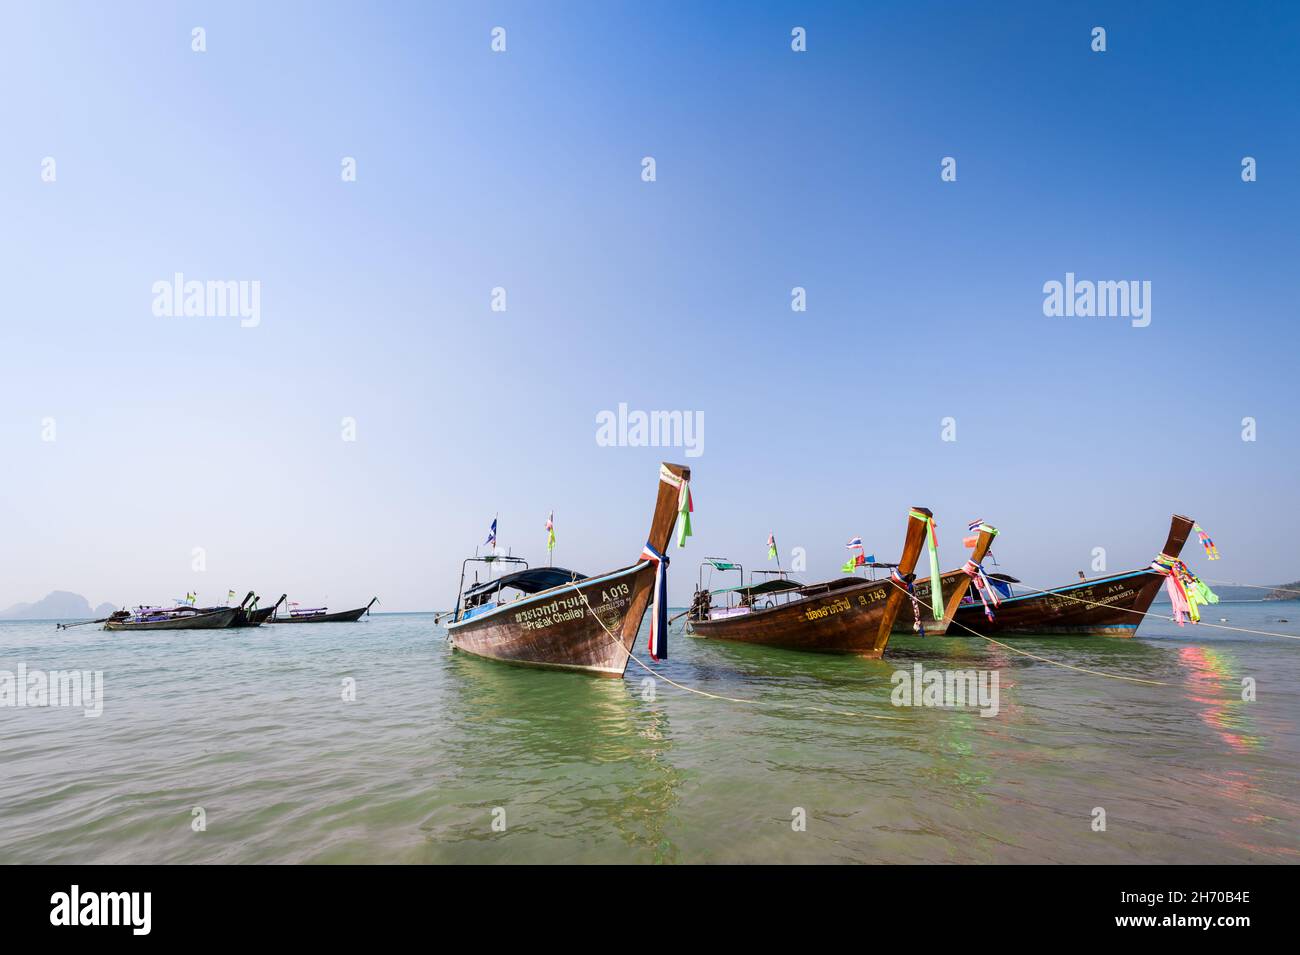 Krabi, Thailand, 29 Jan 2015: Traditional wooden long tail boats anchored at sea at Krabi. Resort, travel and vacation concepts. Stock Photo